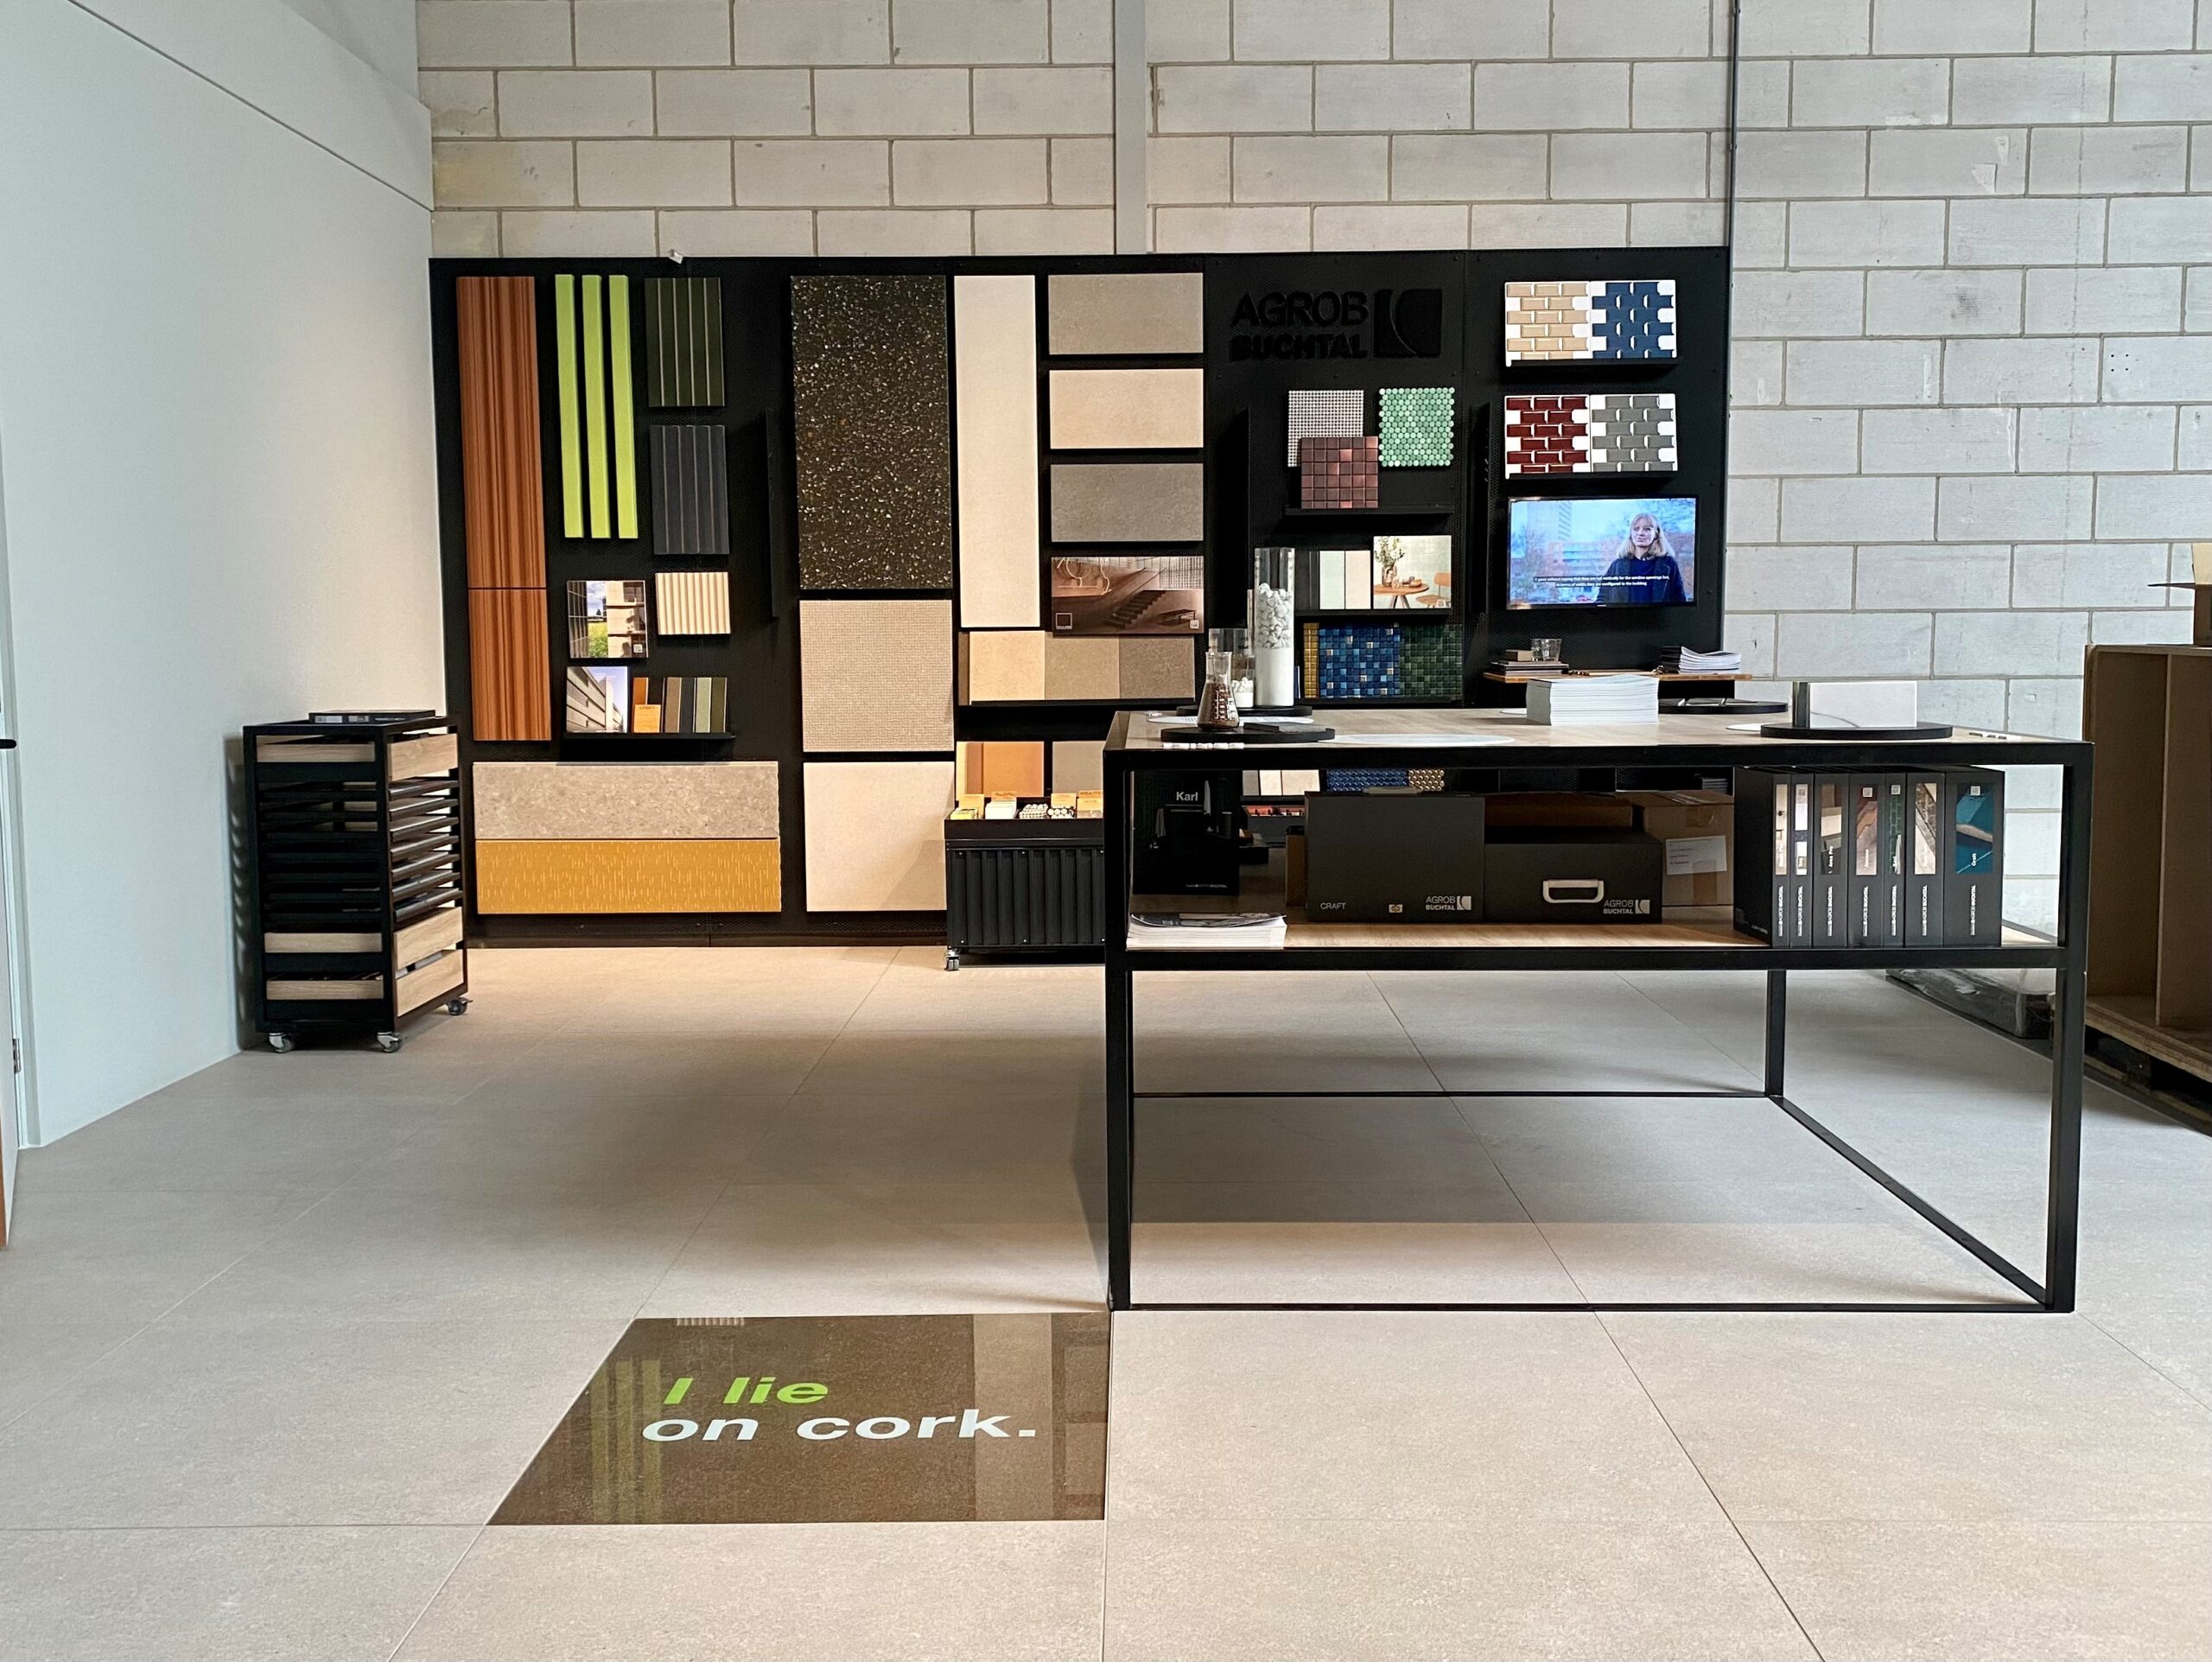 Wiederverwendeter Drytile-Boden im gerade eröffneten Architekten-Showroom von Broeinest in Amsterdam. Ausführung im Format 90x90 cm, Serie Area Pro, sandgrau.